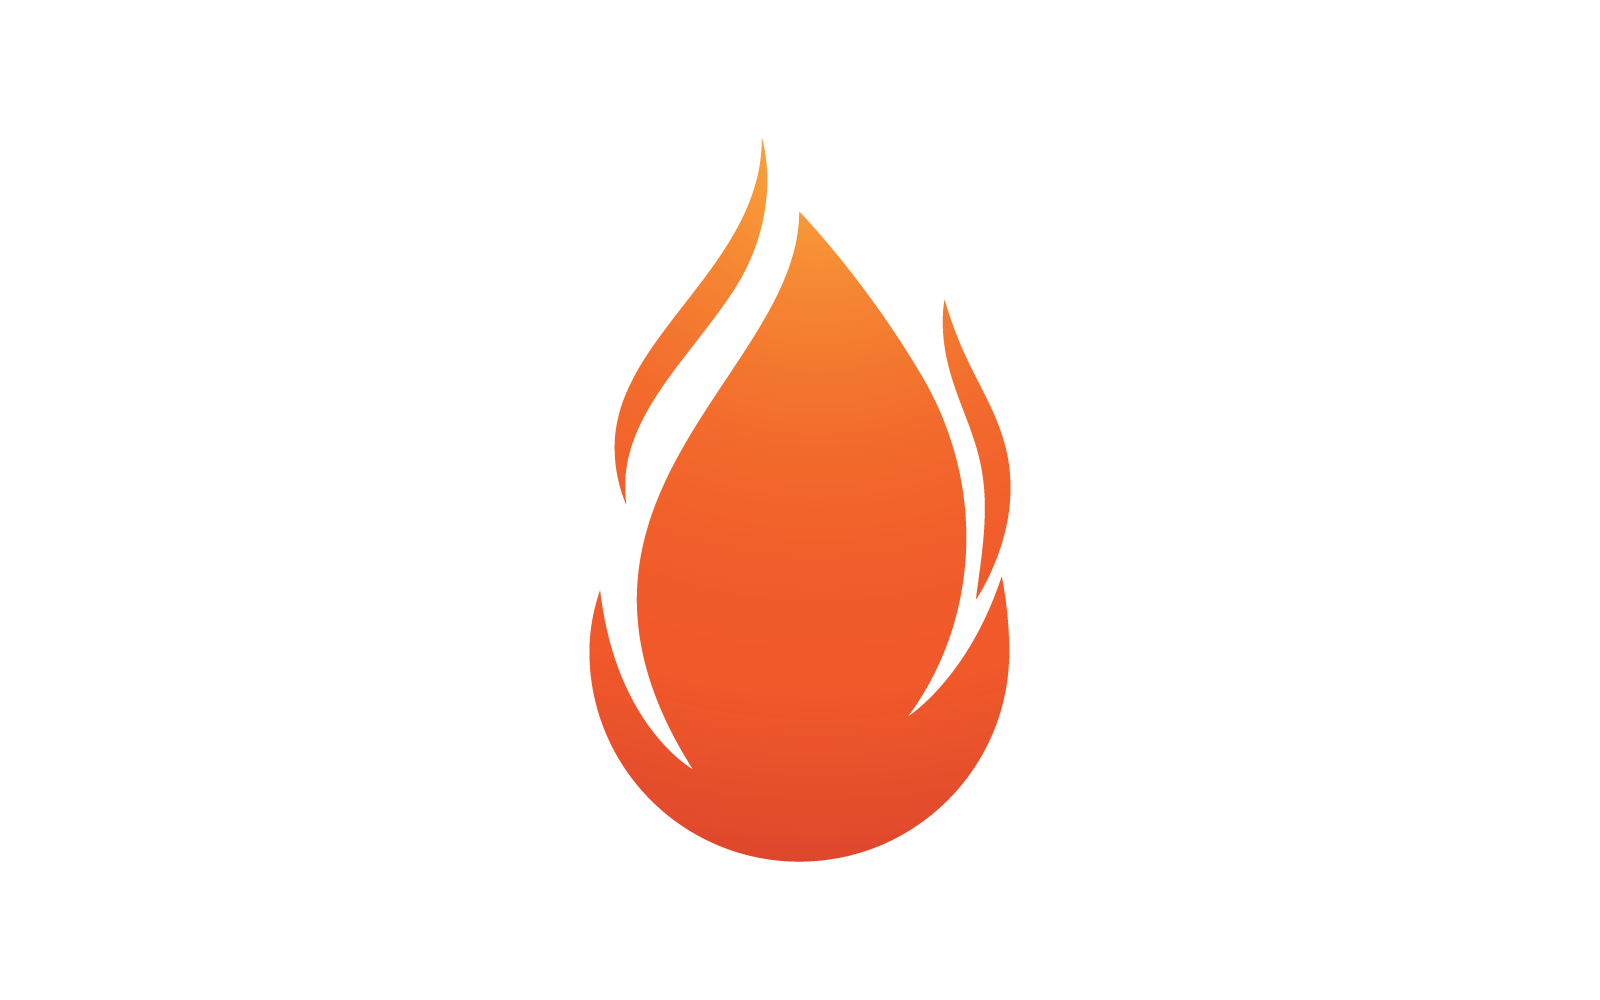 Fire flam logo flat design Template